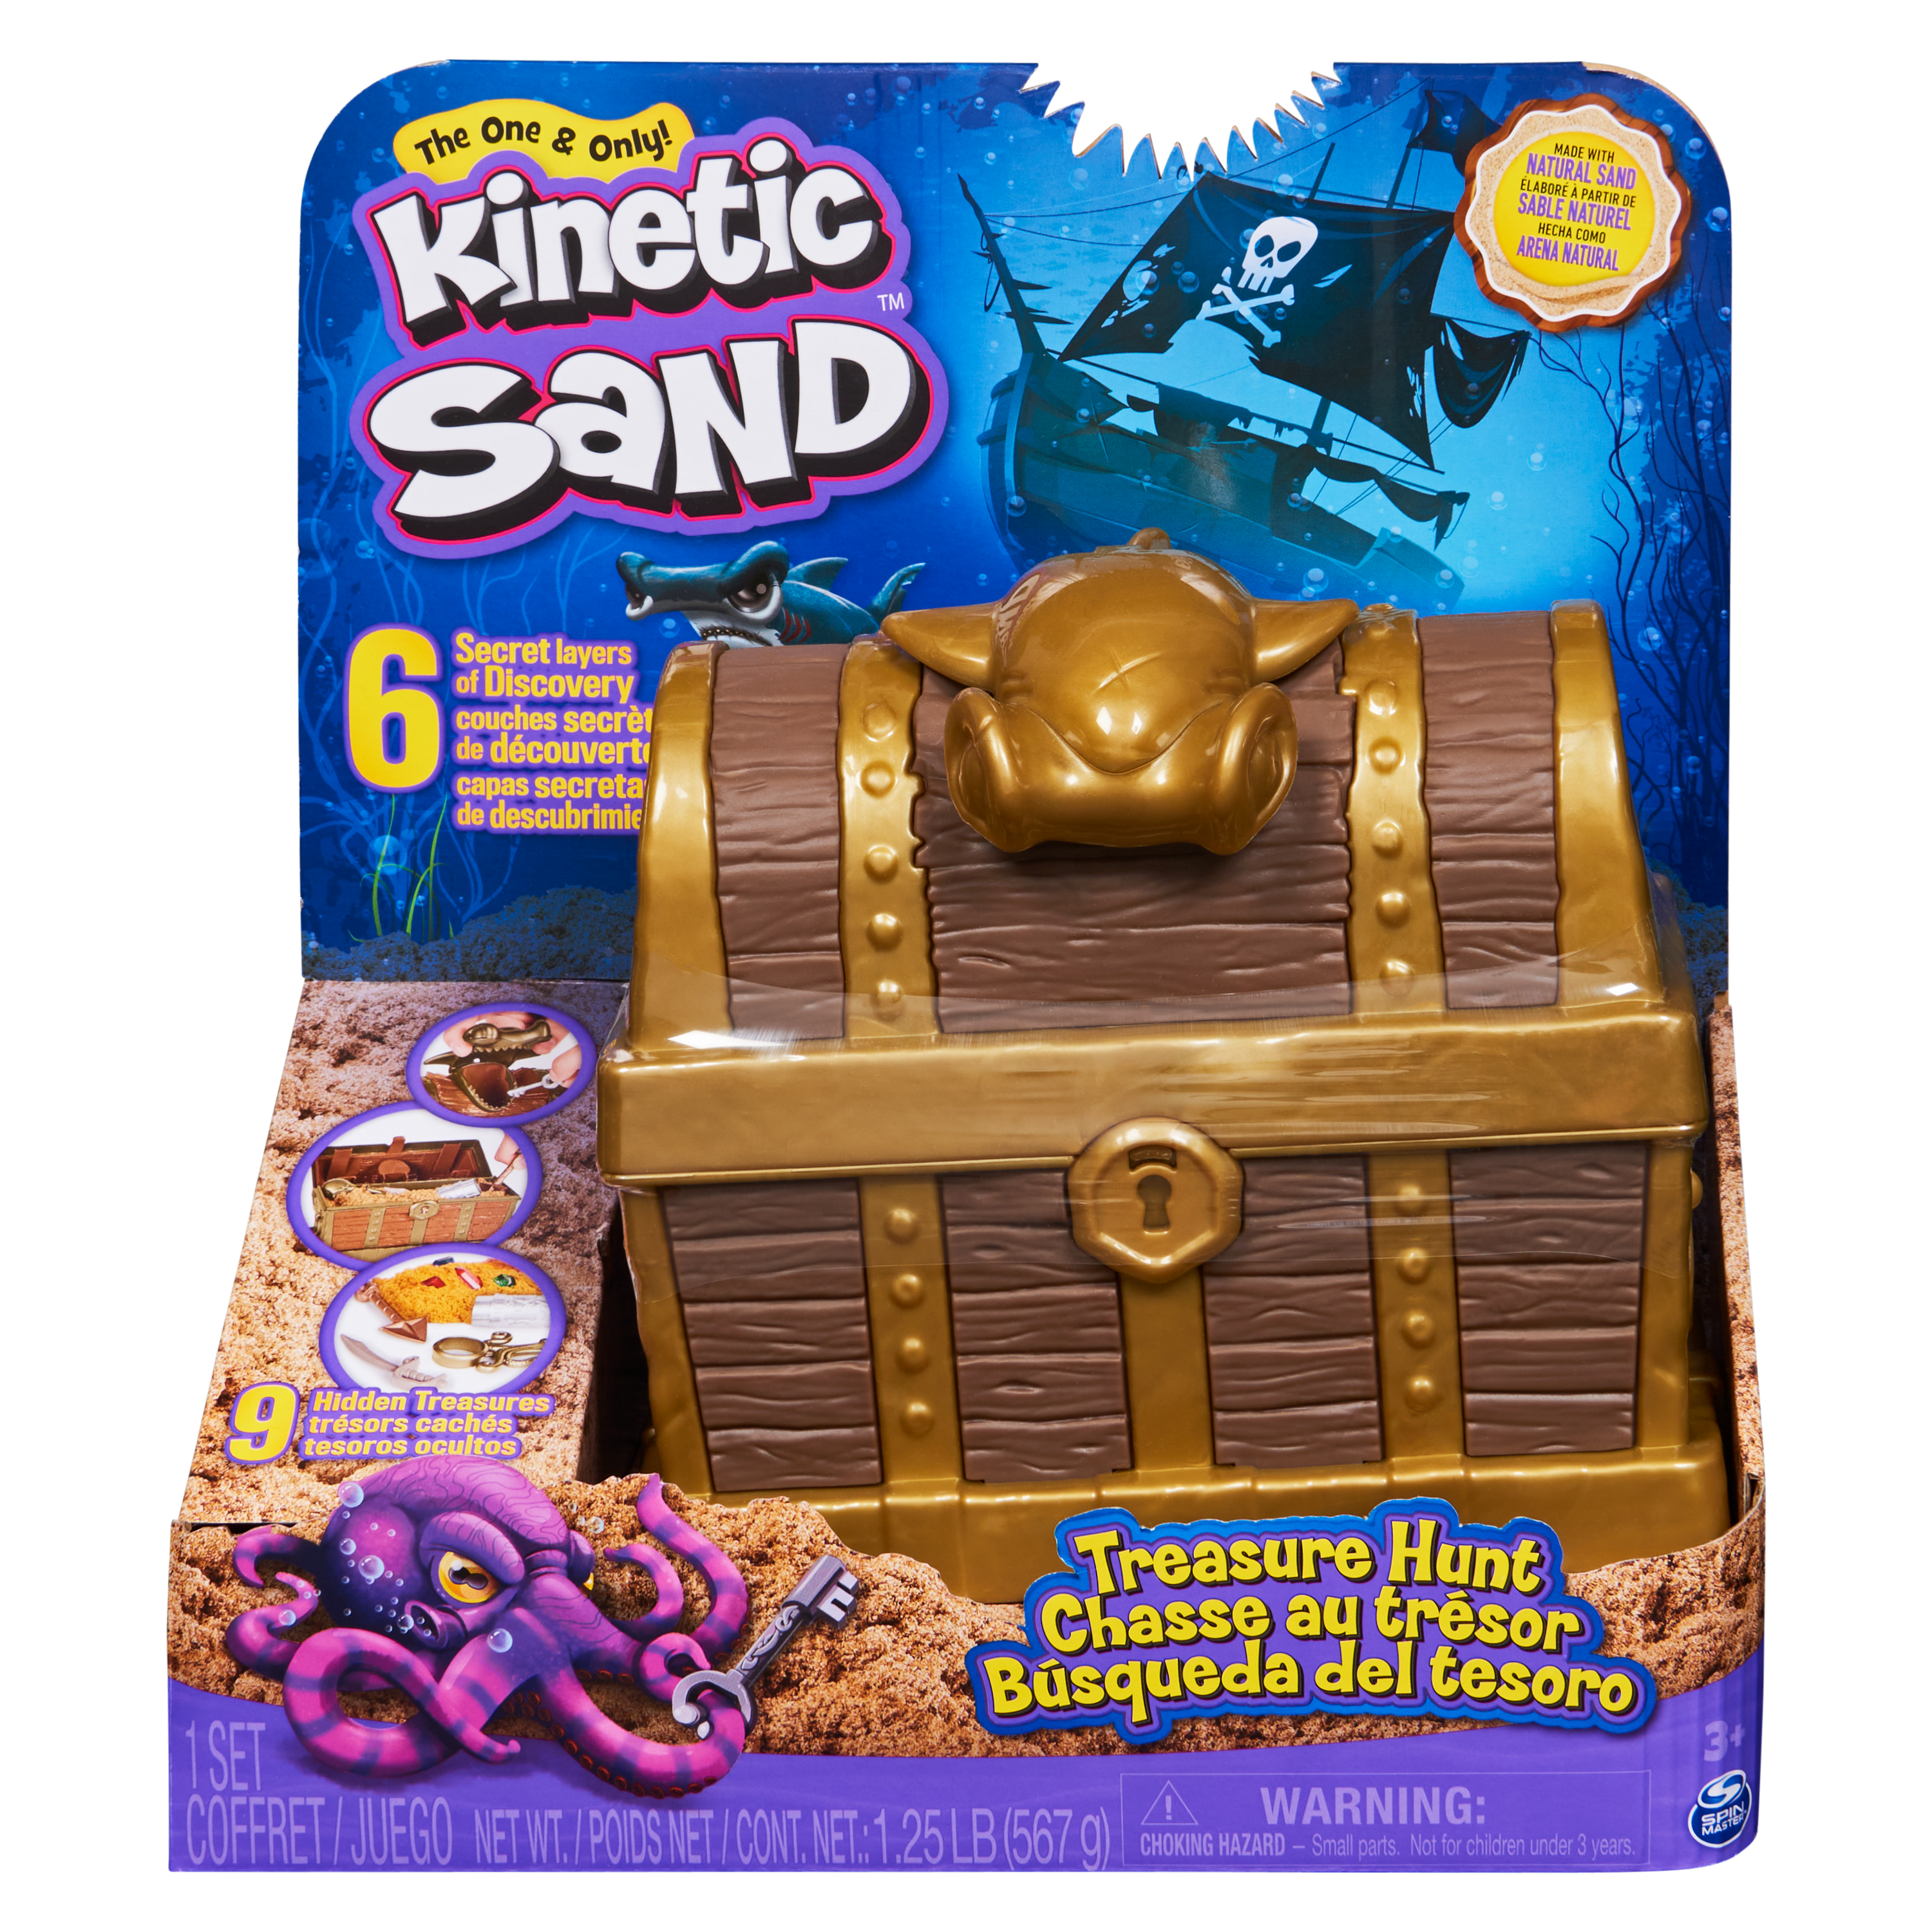  kinetic sand, set di gioco caccia al tesoro con 9 sorprese - KINETIC SAND